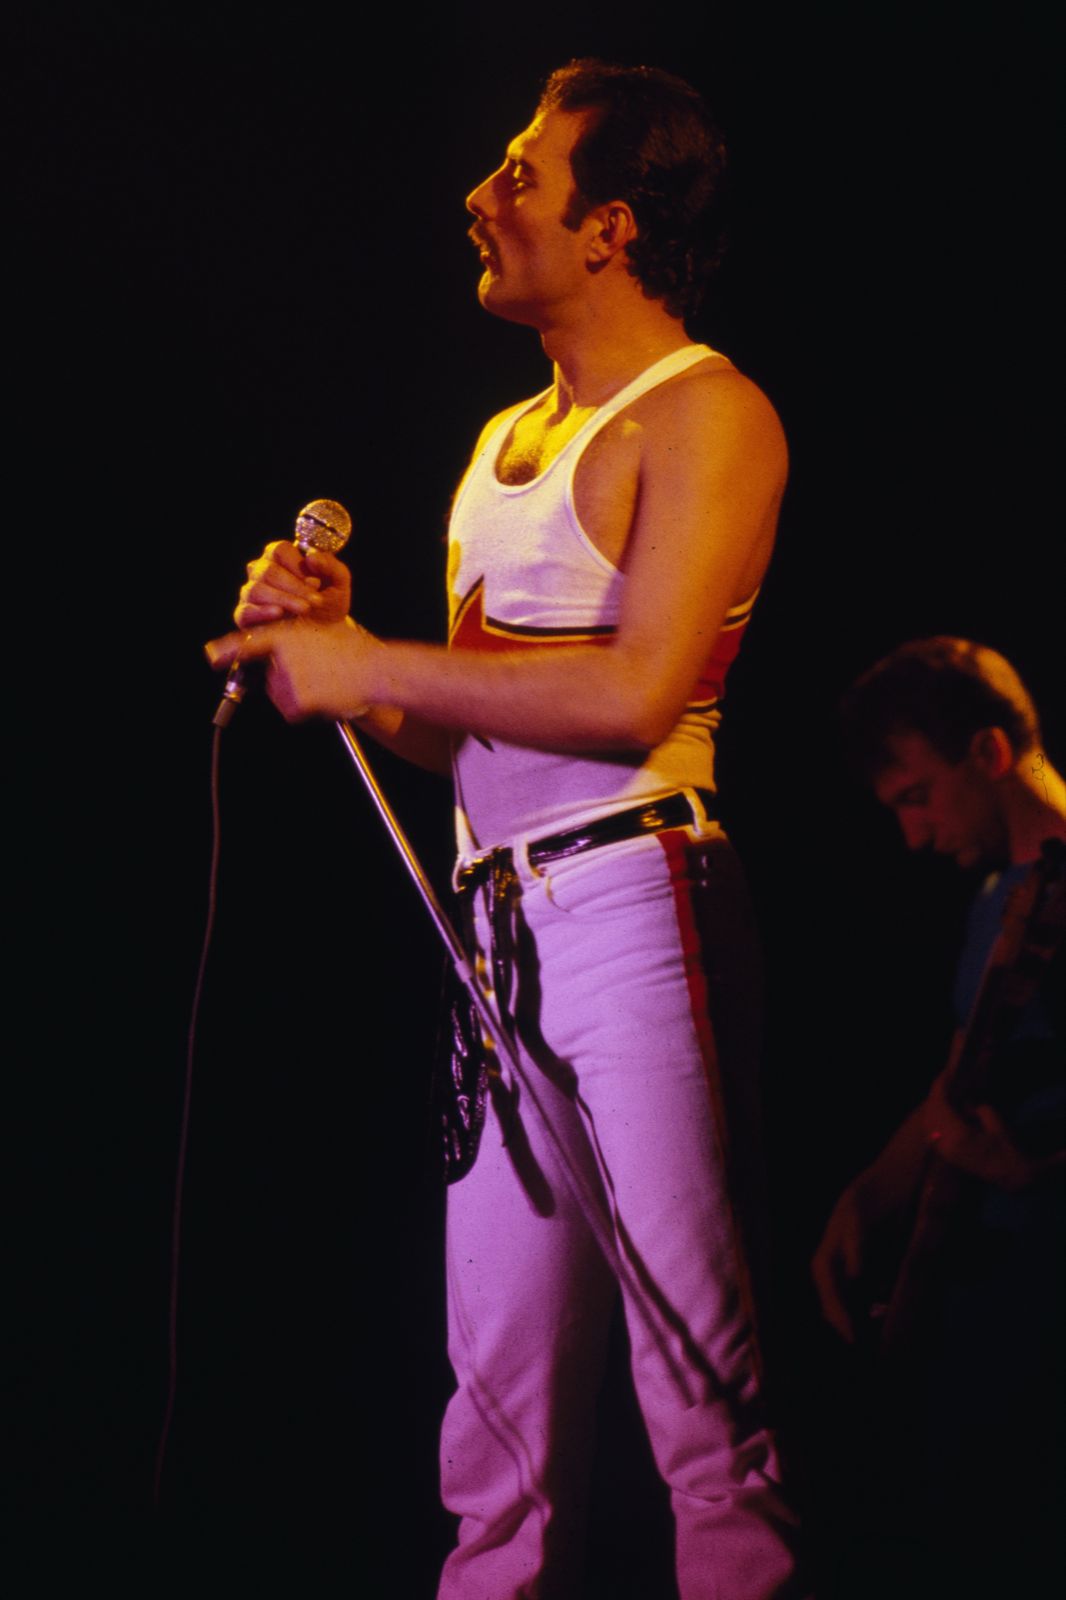 queen 1982 tour